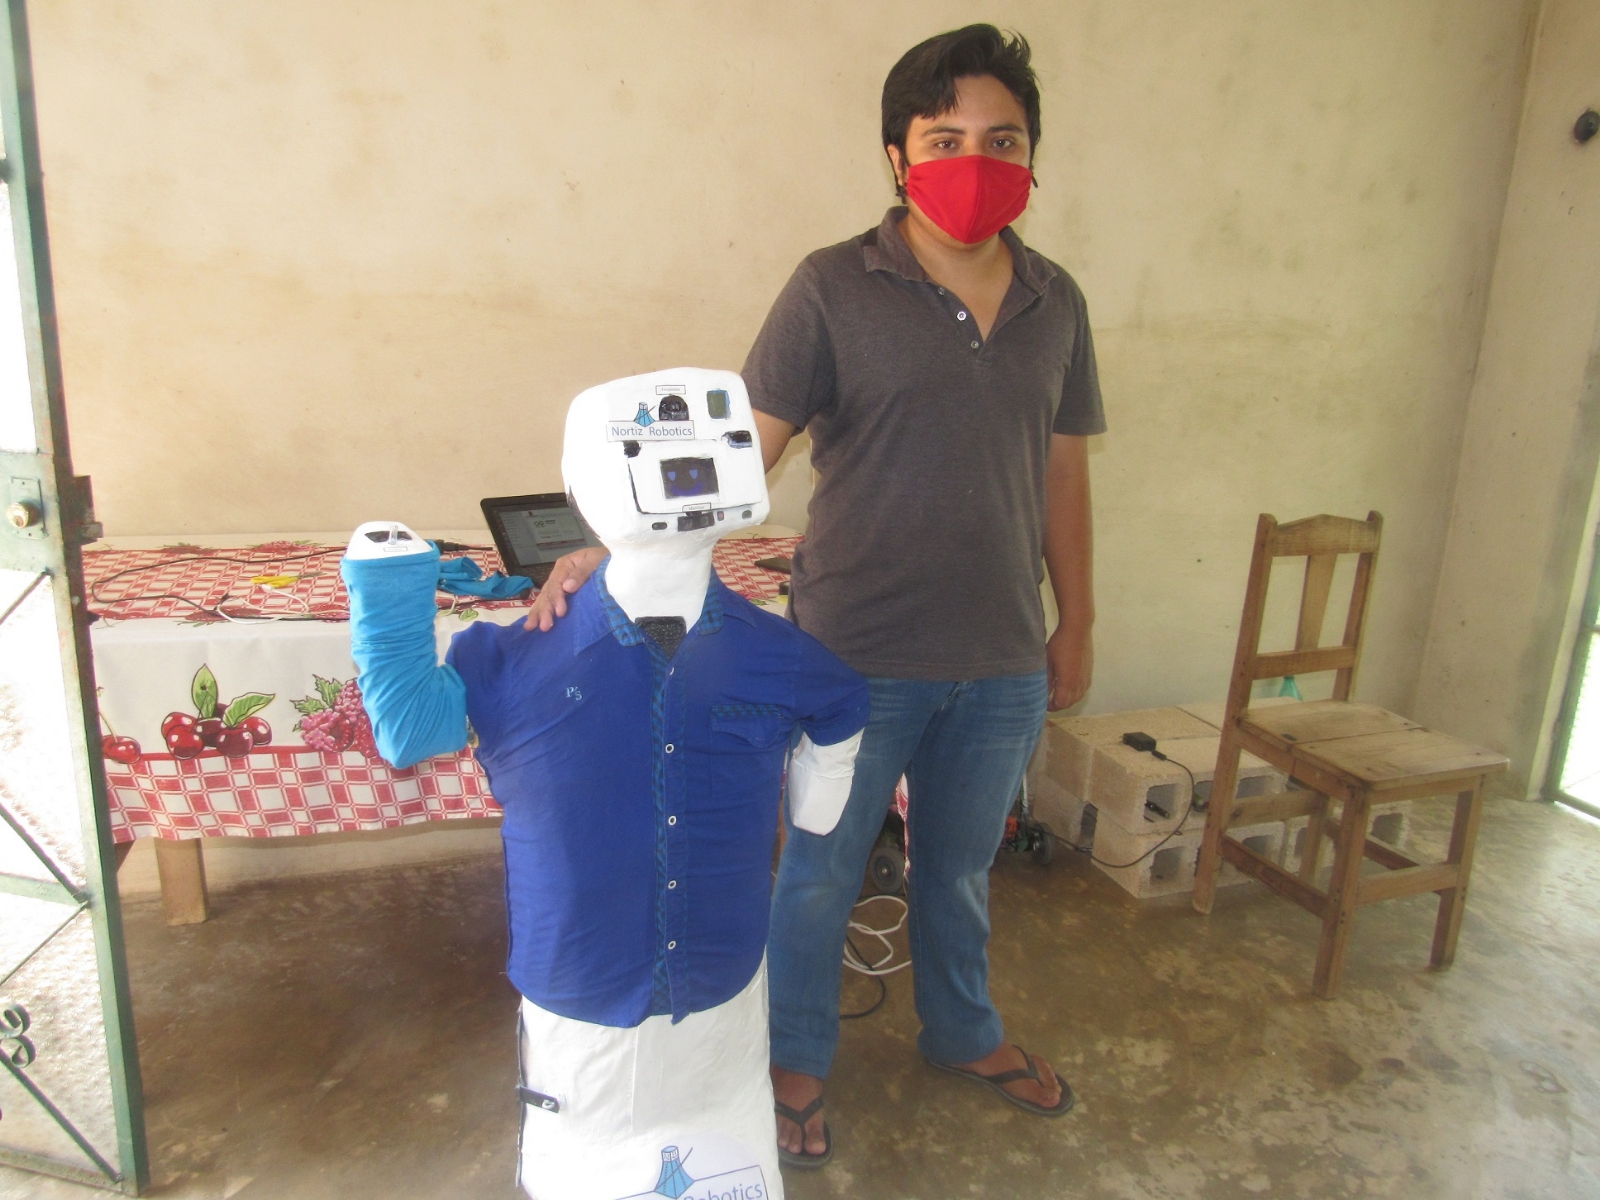 Con el robot, el joven de 22 años busca generar una menor exposición al virus